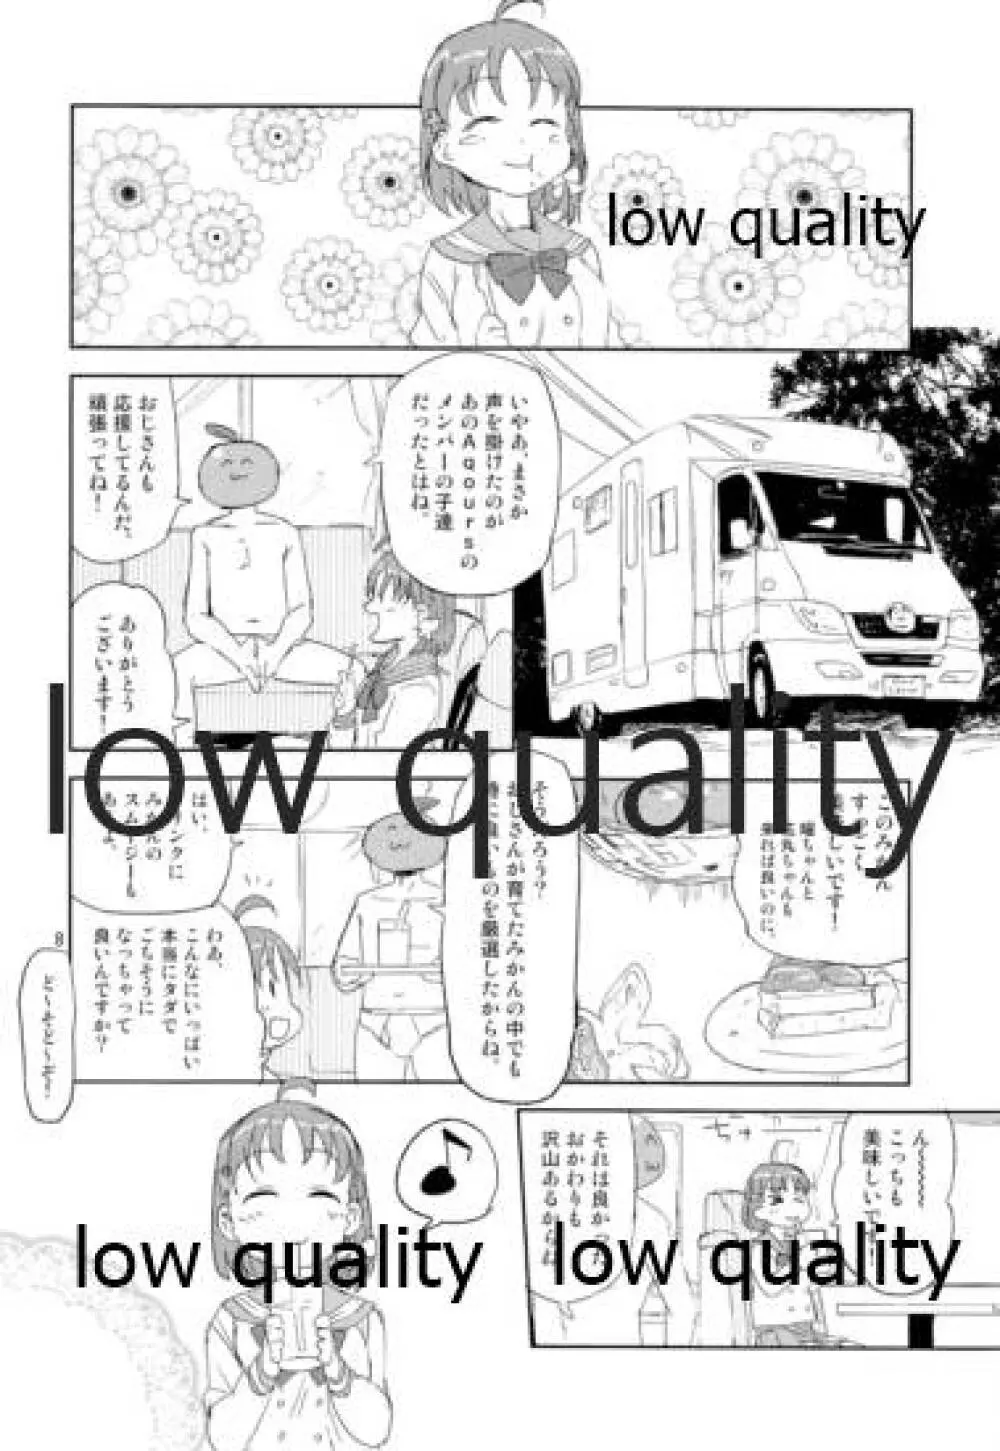 静岡県青少年のための良好な環境整備に関する条例に抵触したい 7ページ